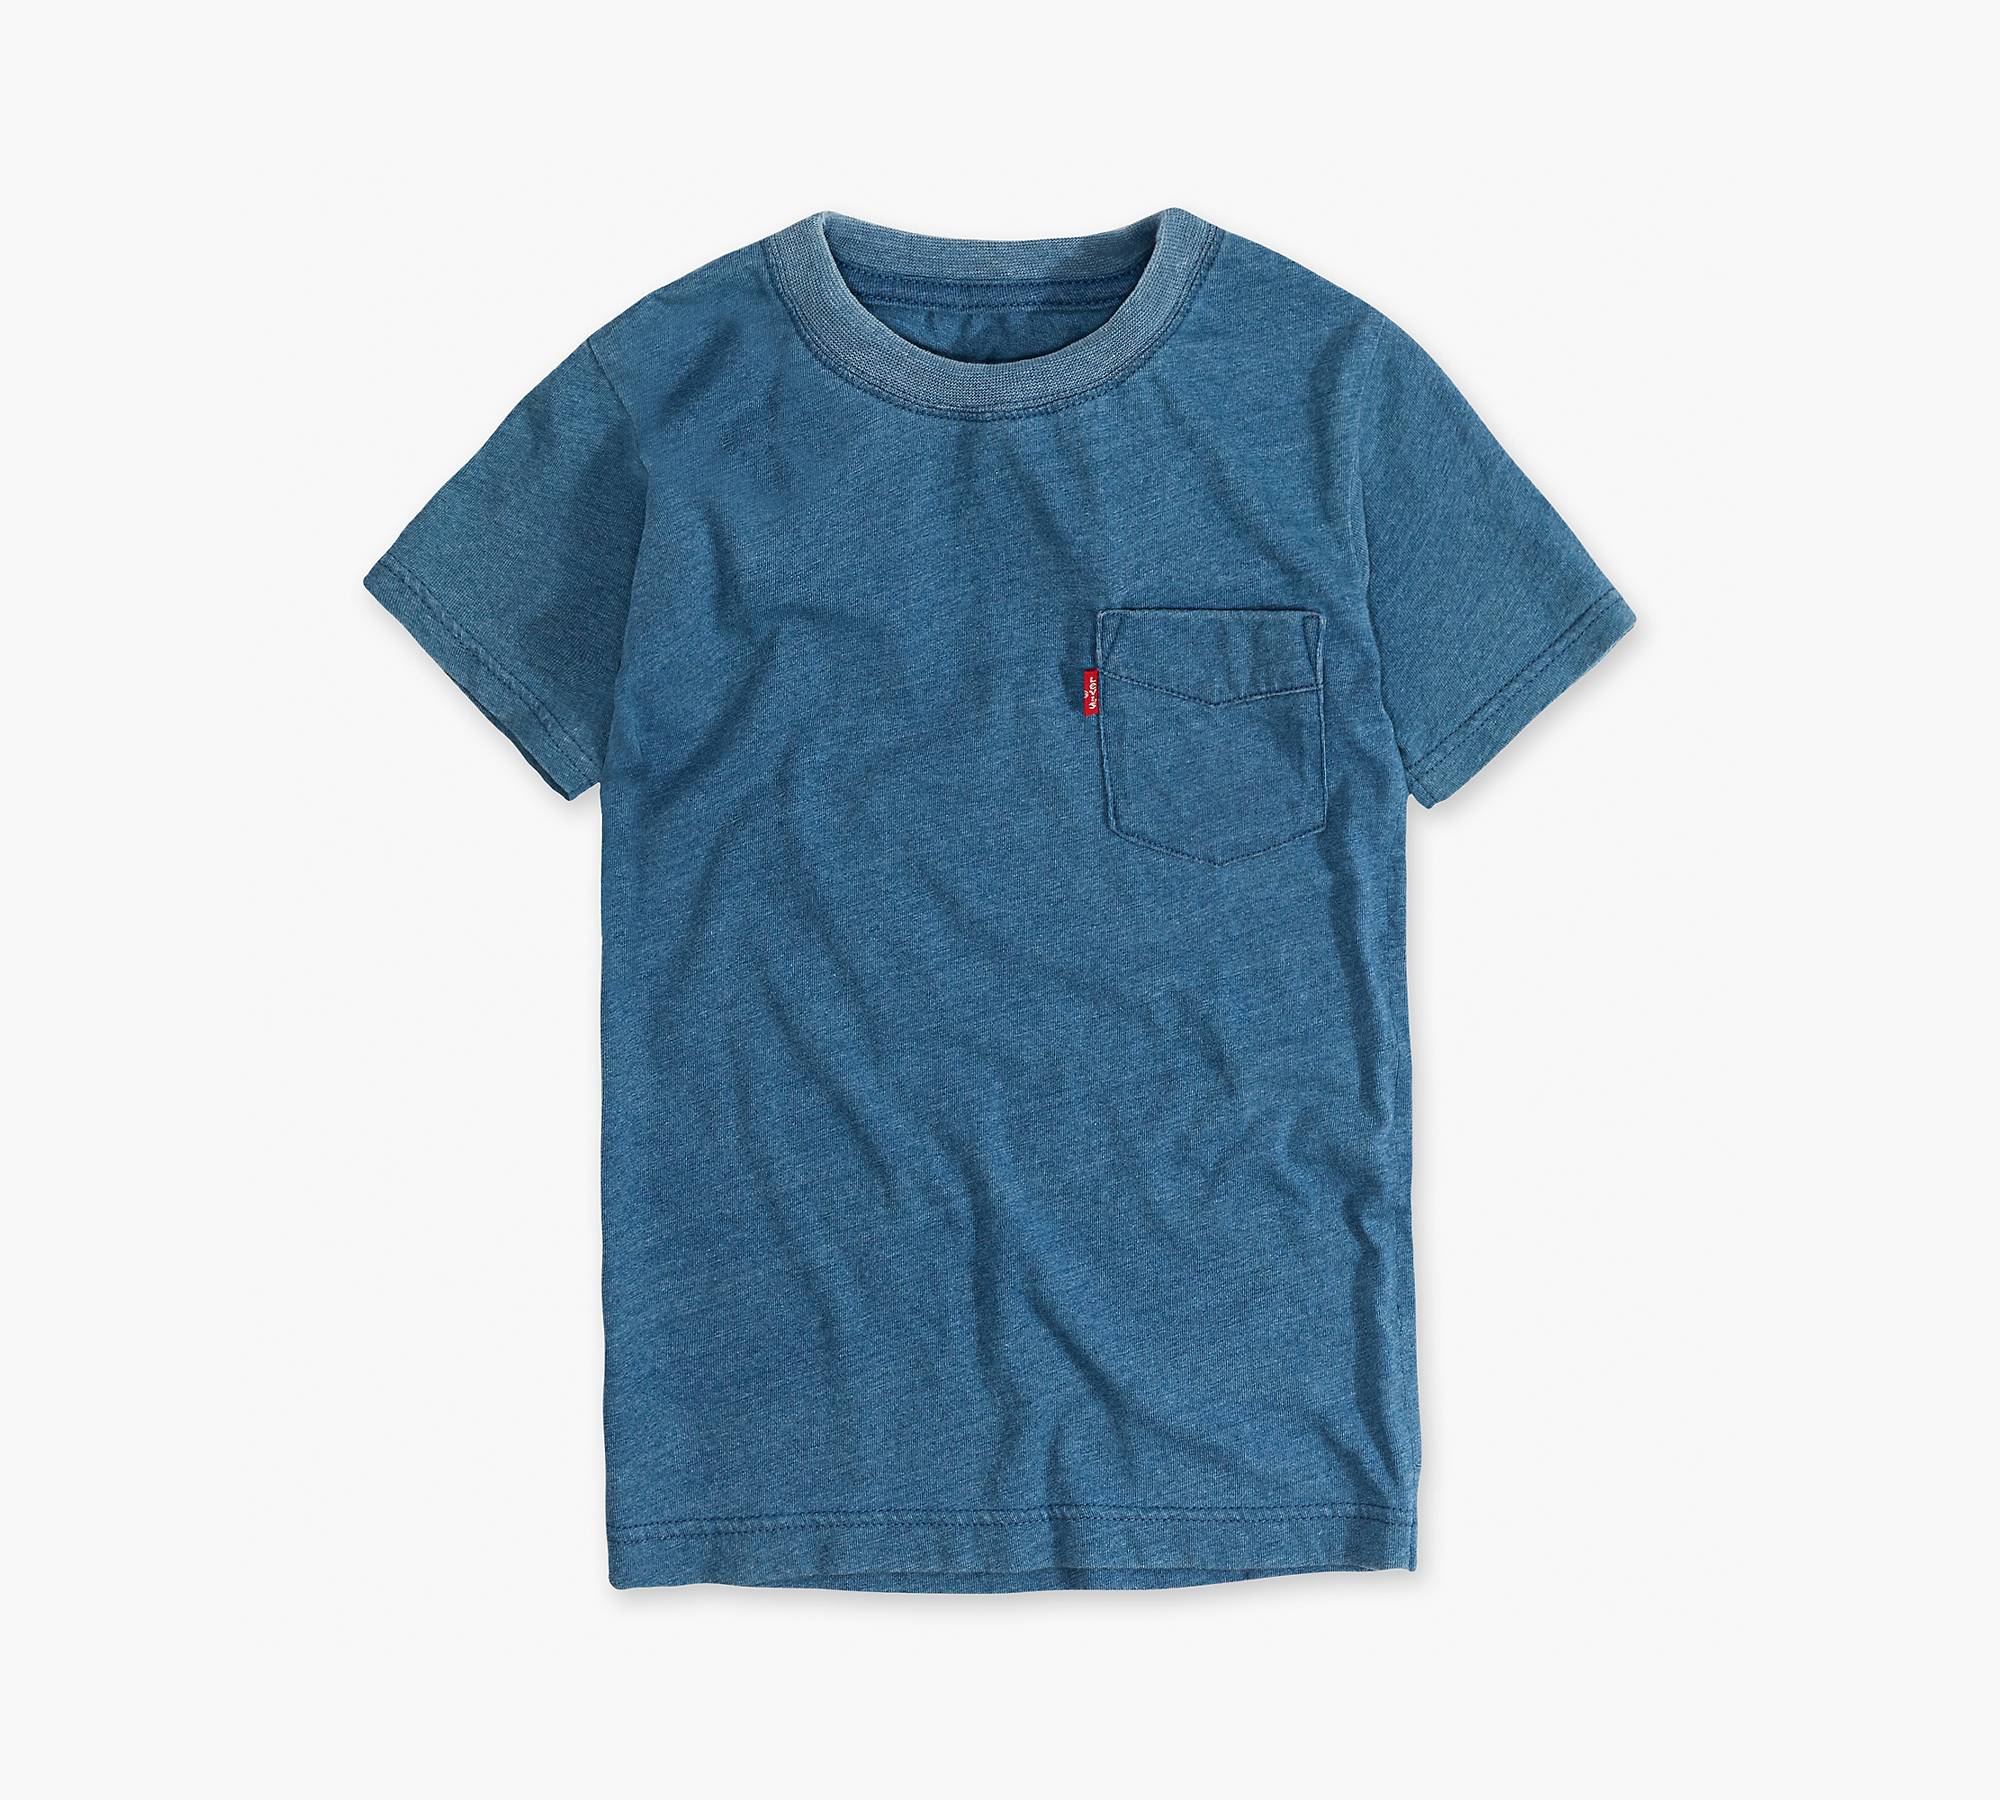 Boys 8-20 Indigo Sunset Pocket Tee Shirt - Blue | Levi's® US